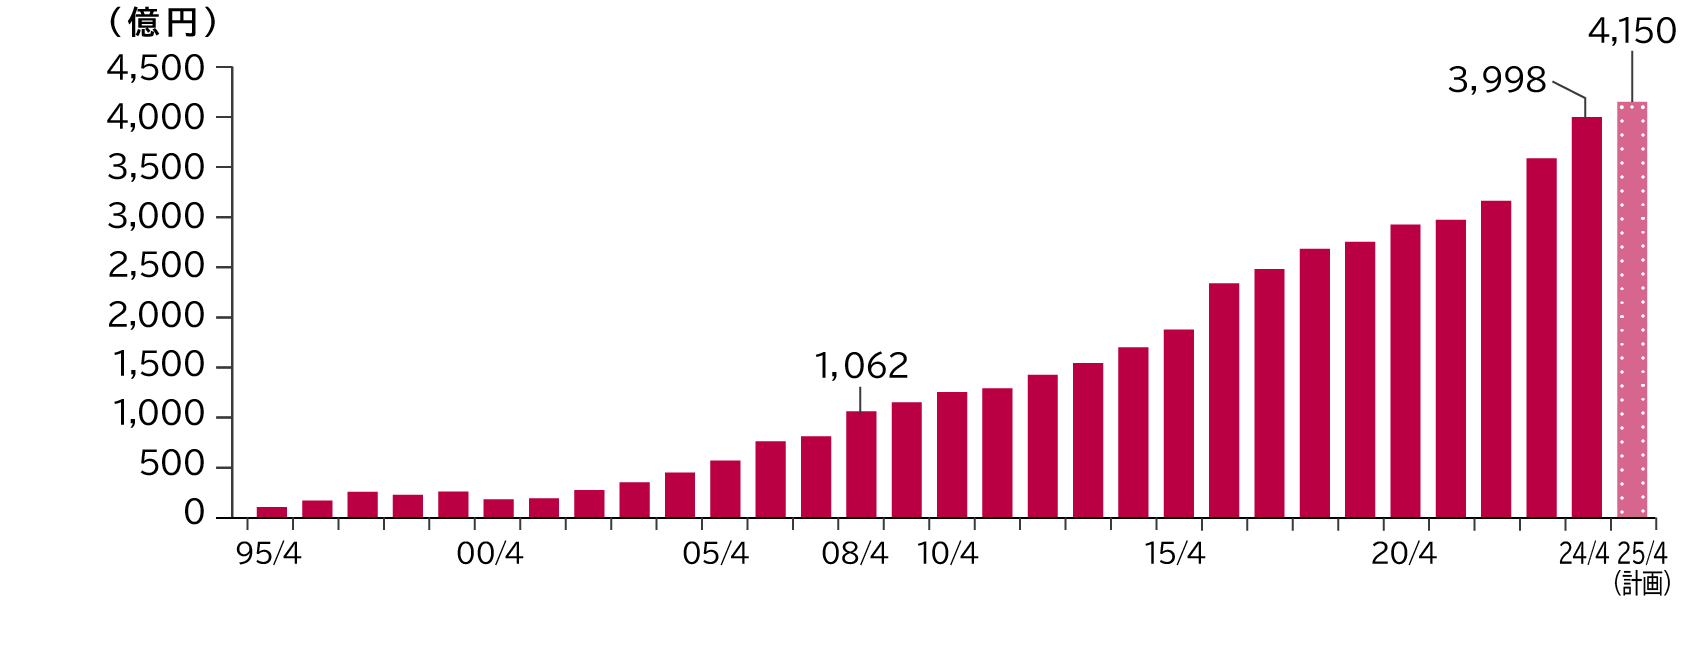 売上高の棒グラフ：2008年4月 1,062億円、2024年4月 3,998億円、2025年4月（計画） 4,150億円